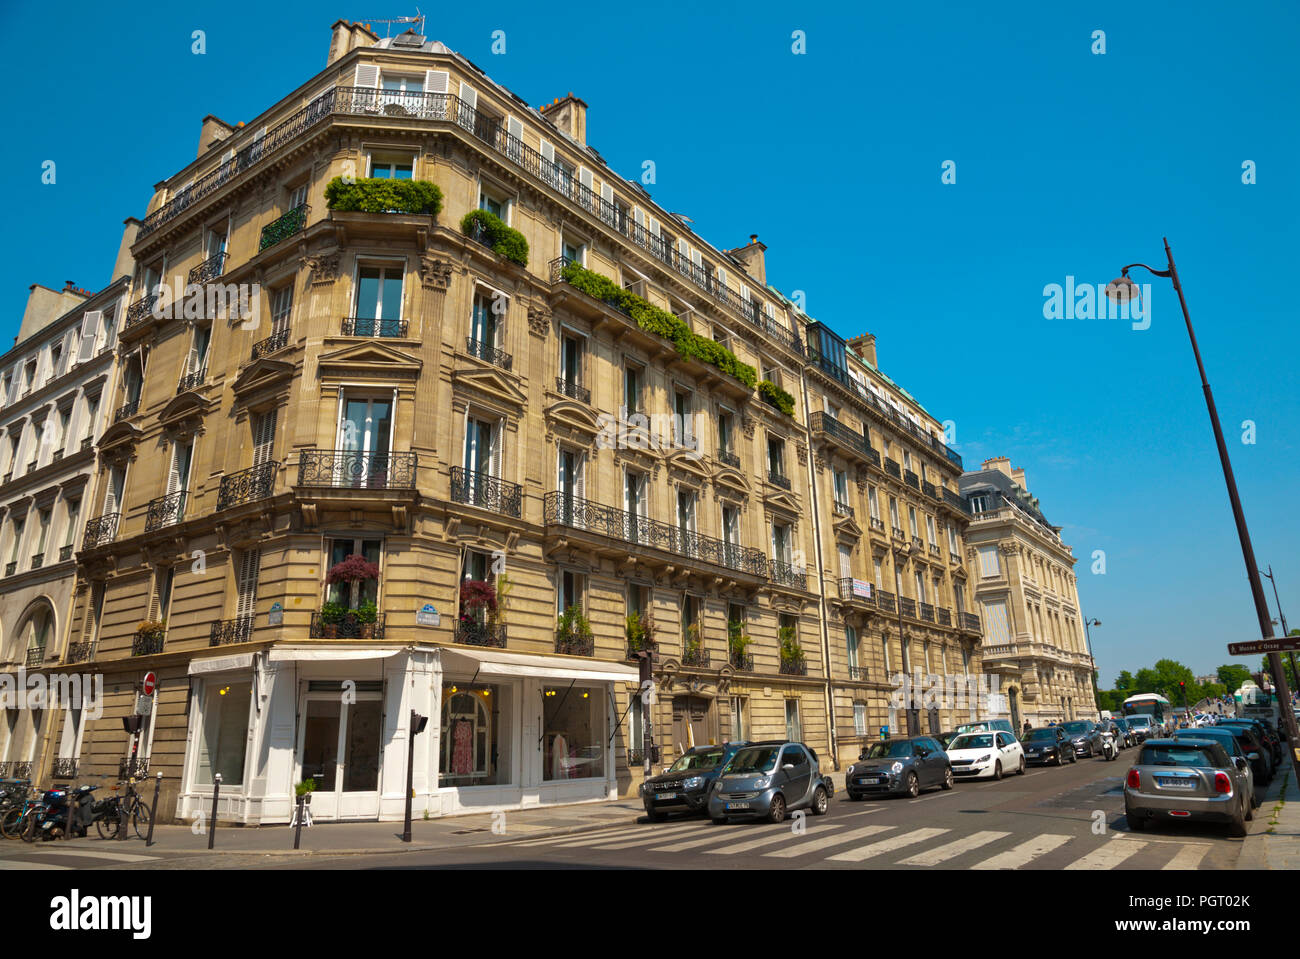 Rue de Solférino, St Germain des Prés, Rive Gauche, Paris, France Banque D'Images